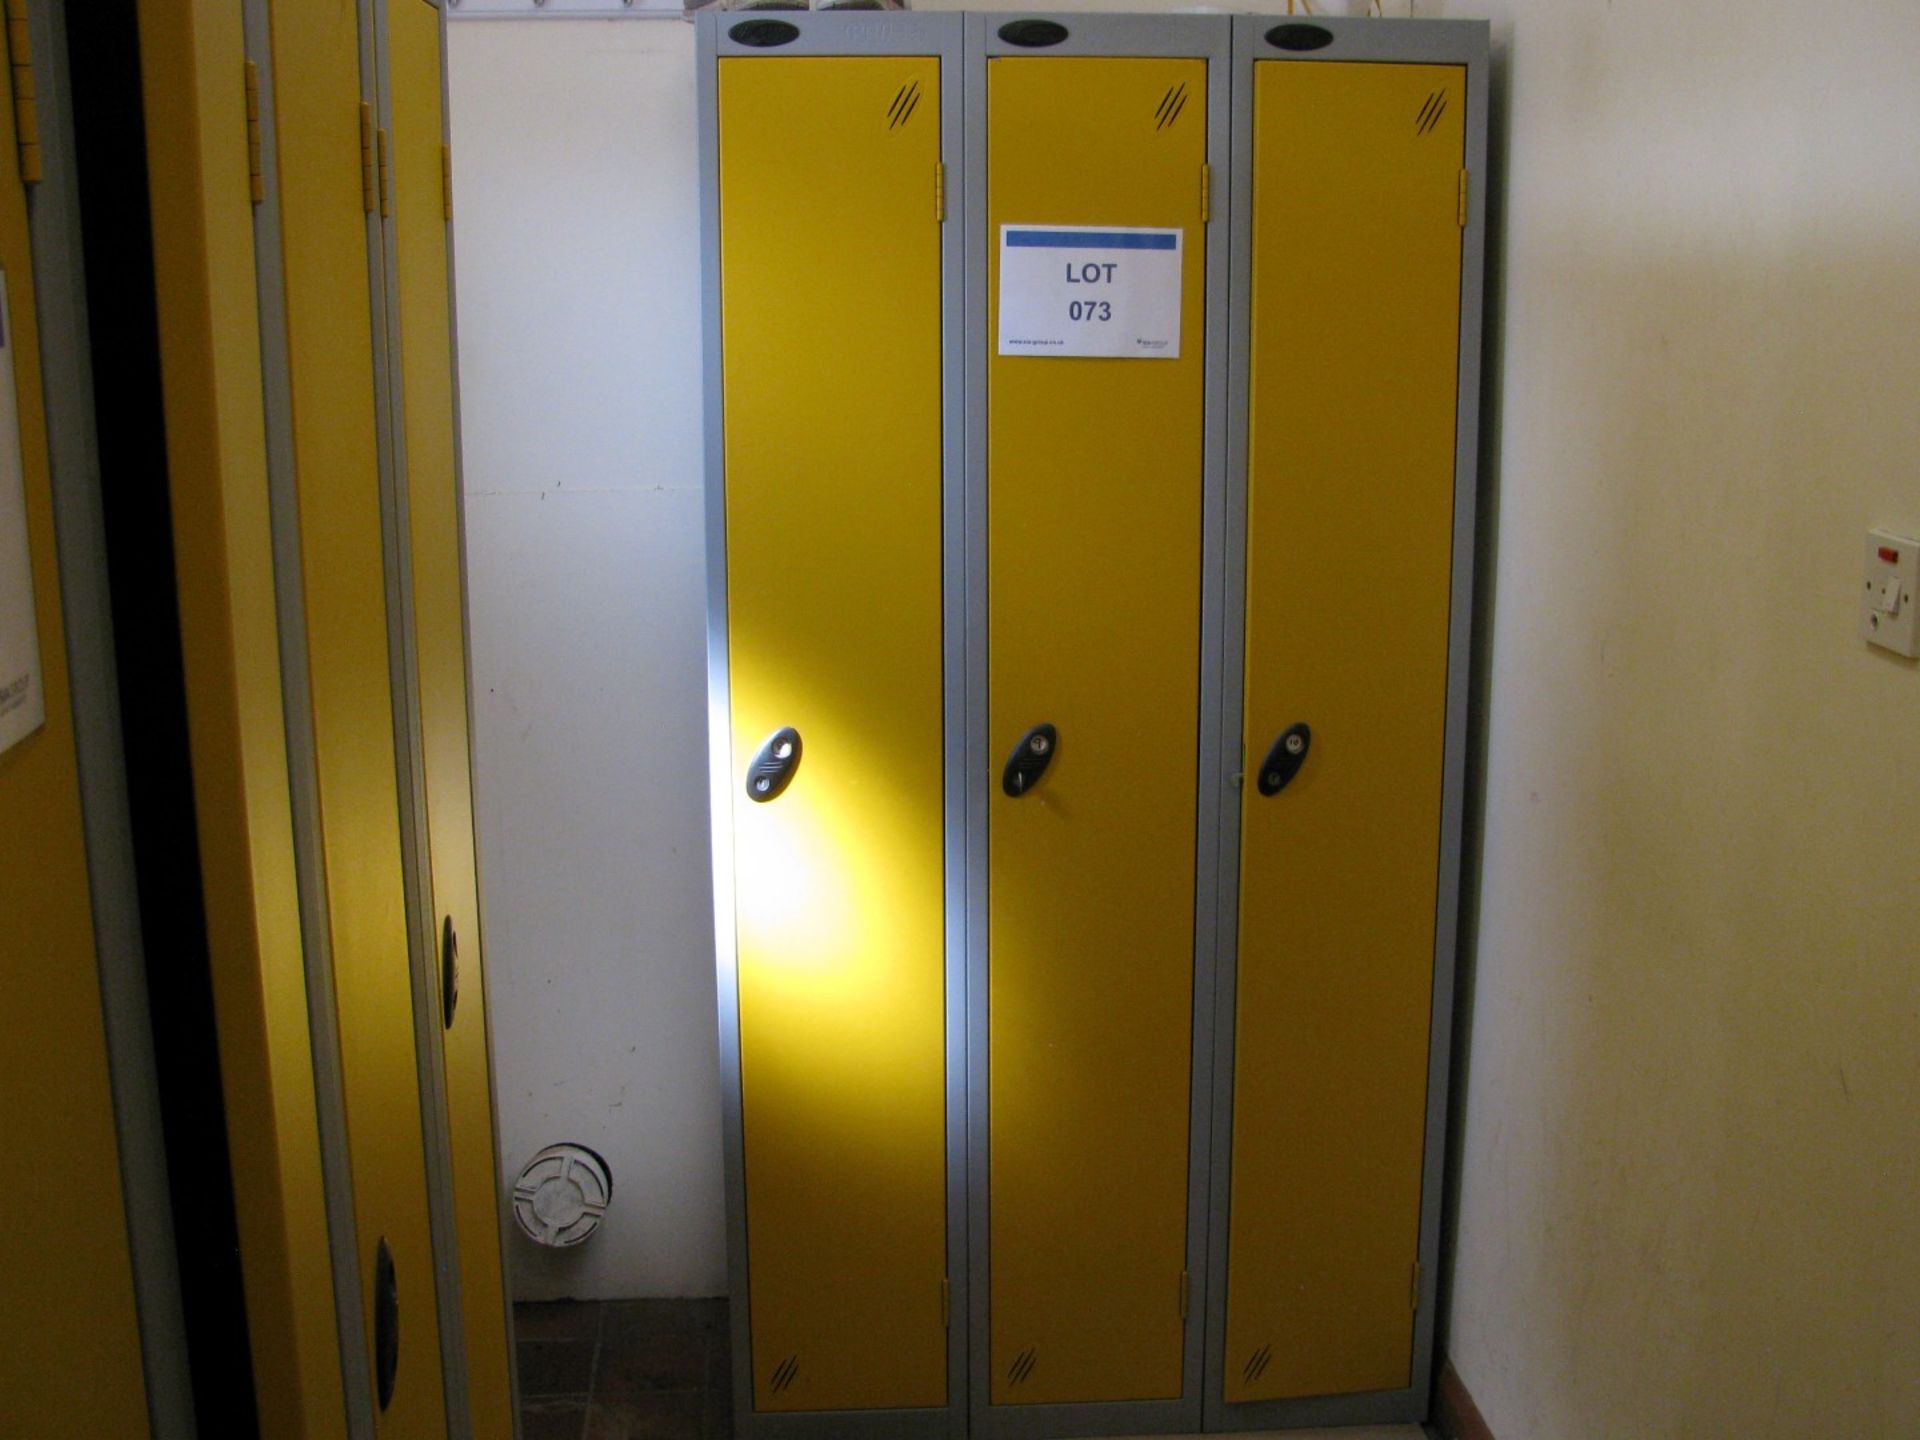 (5) Steel personnel lockers